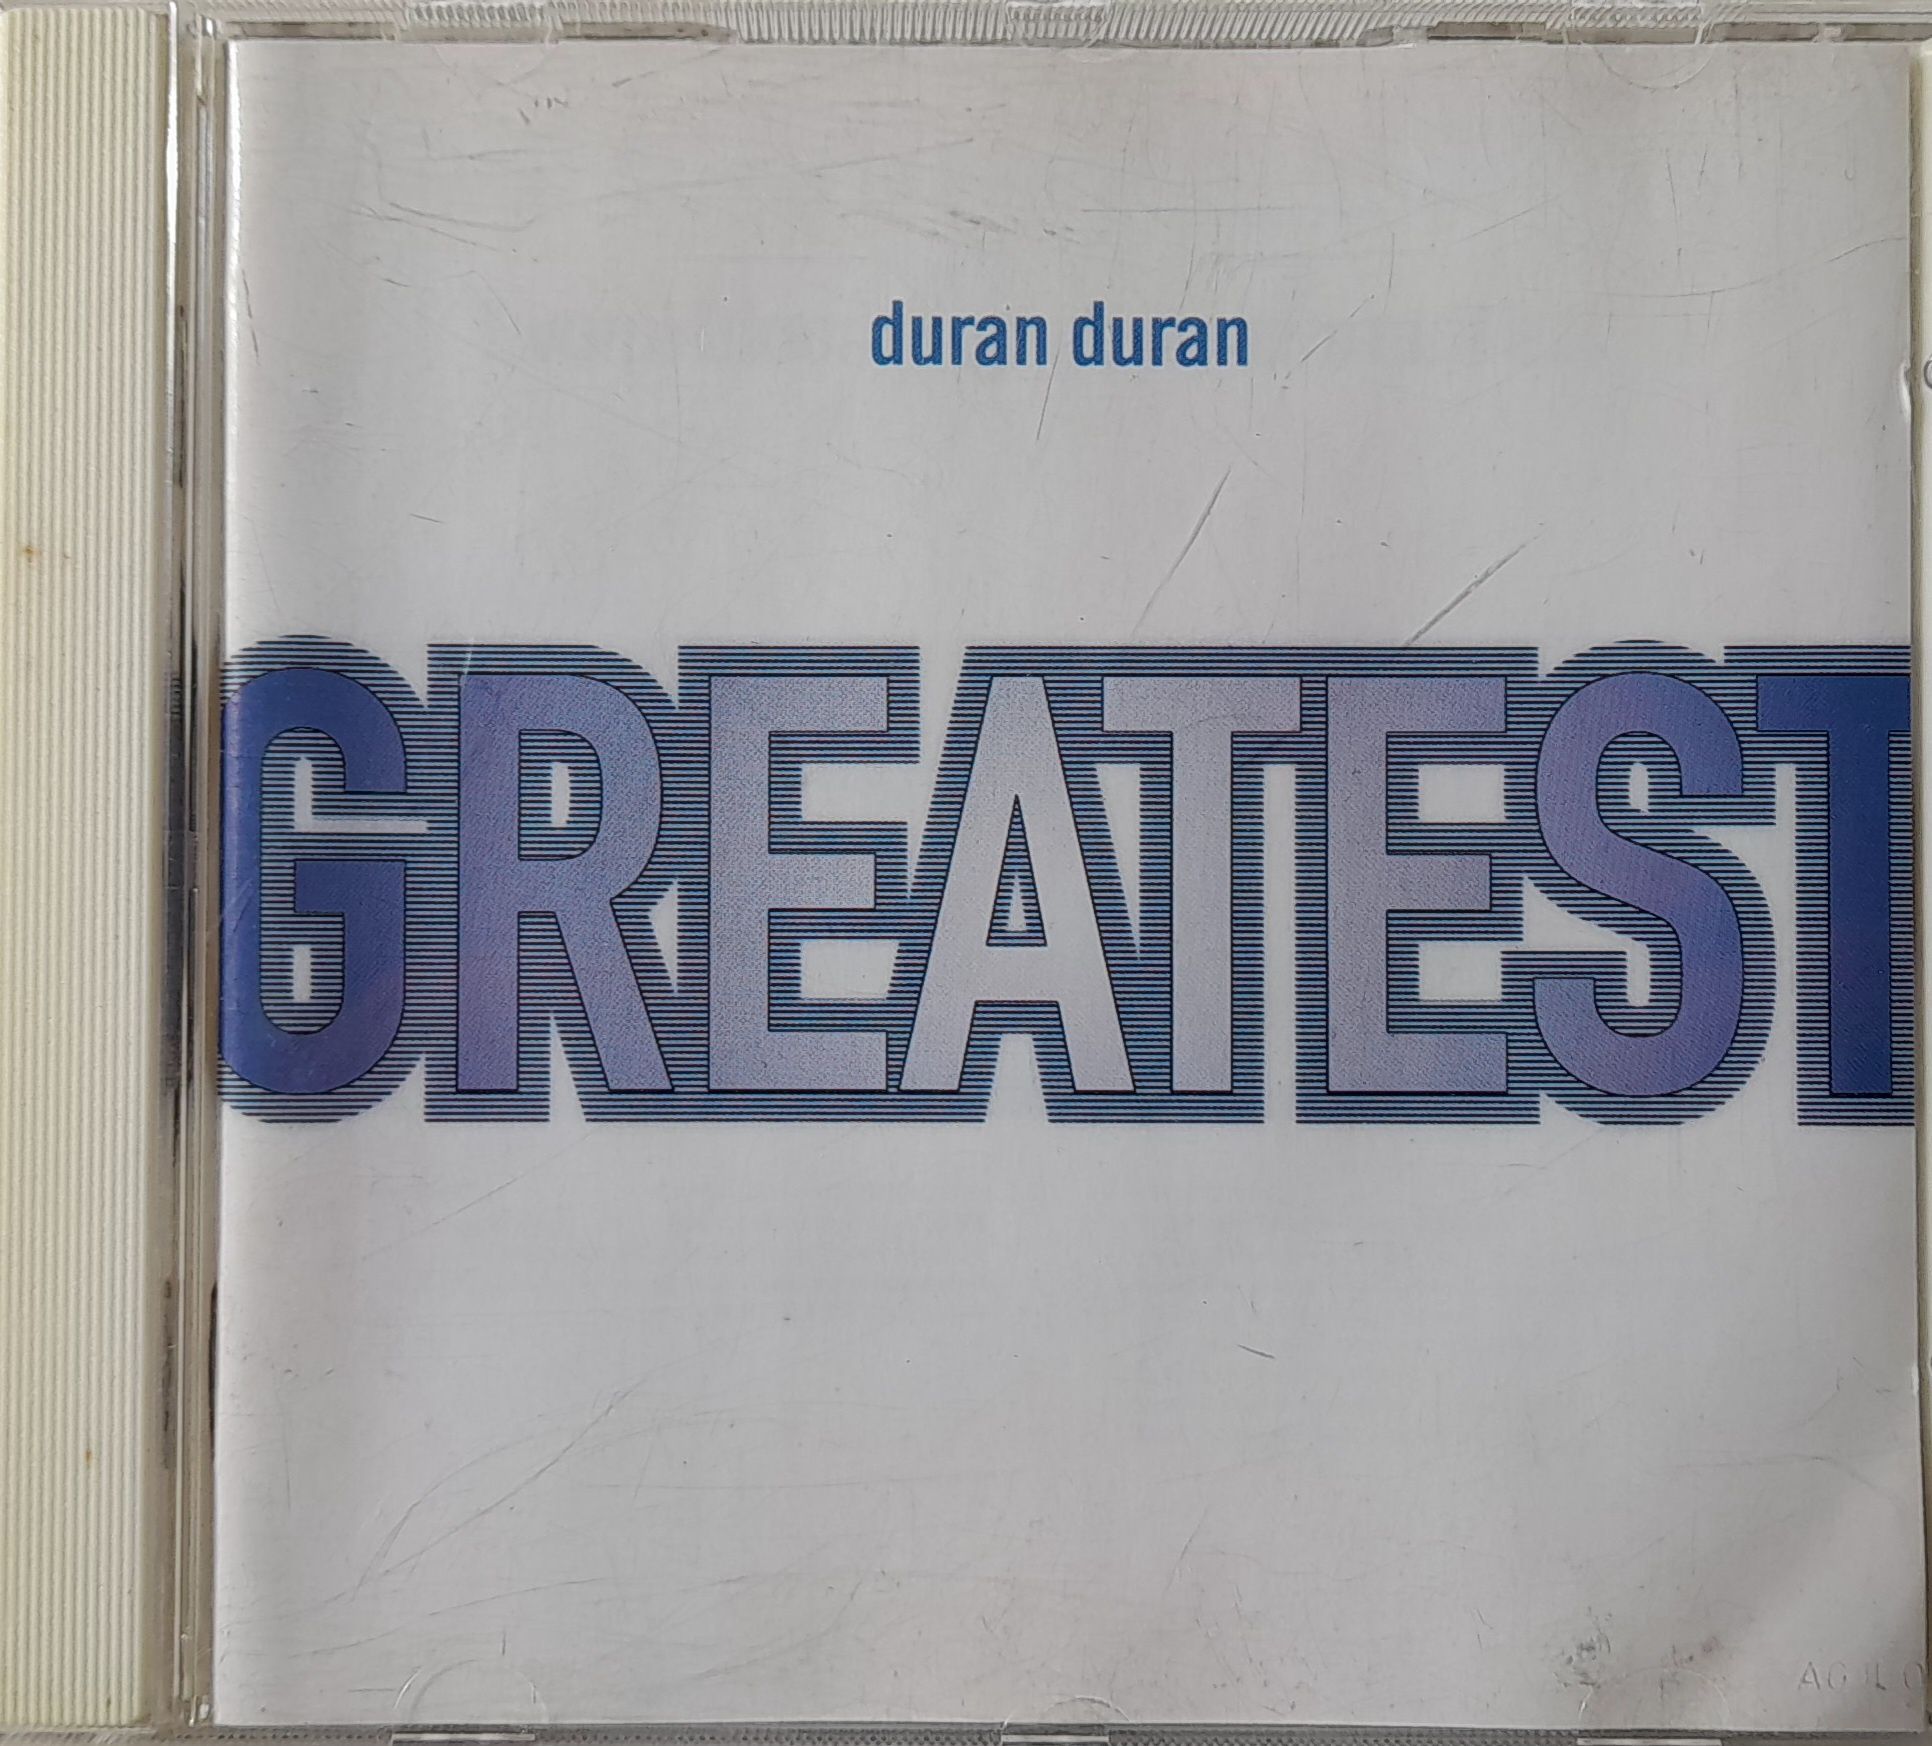 CD Duran Duran - Greates hits